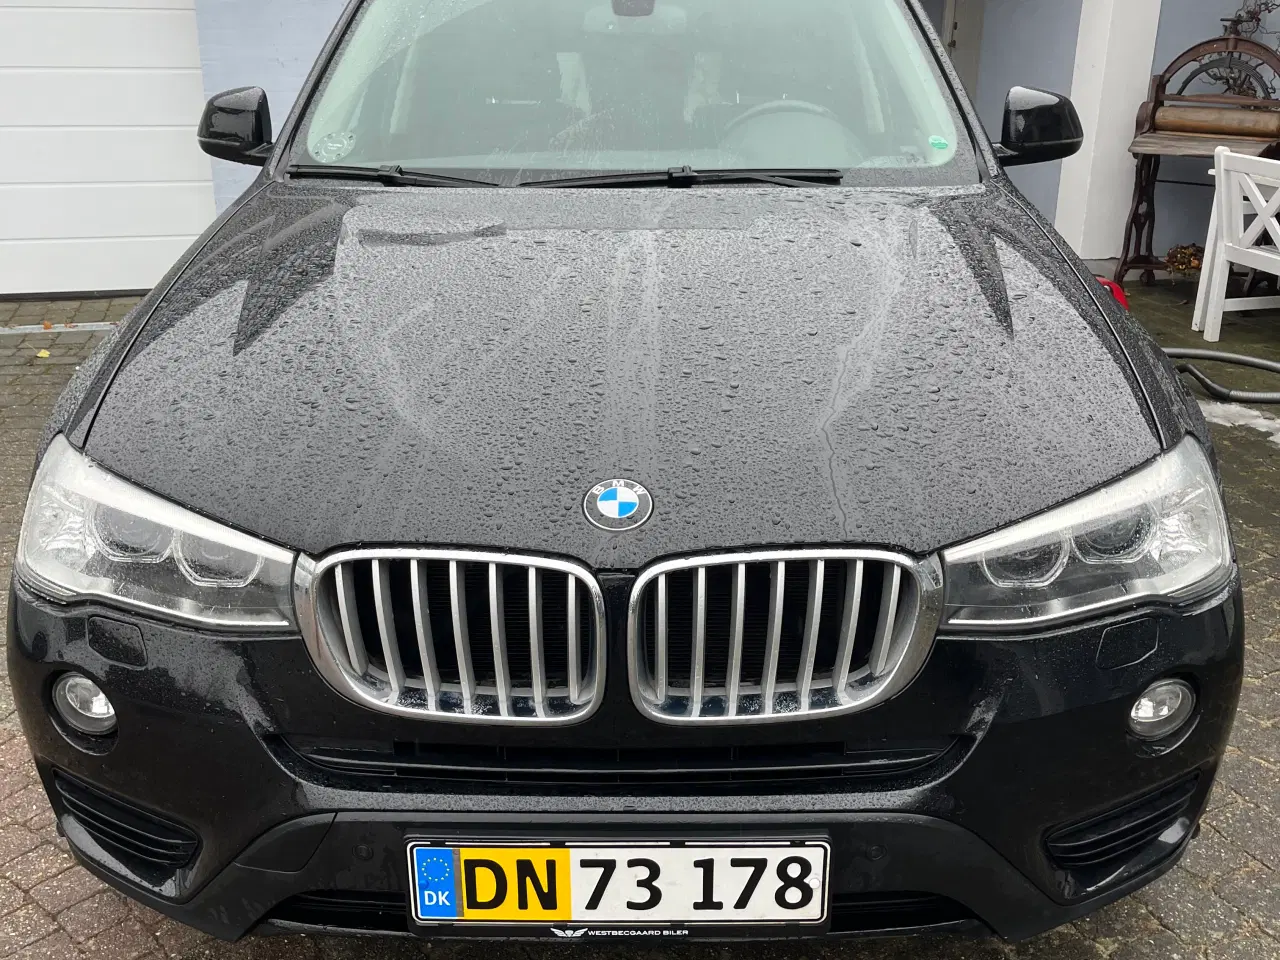 Billede 4 - Flot BMW X3 28i aut./skal sælges nu!